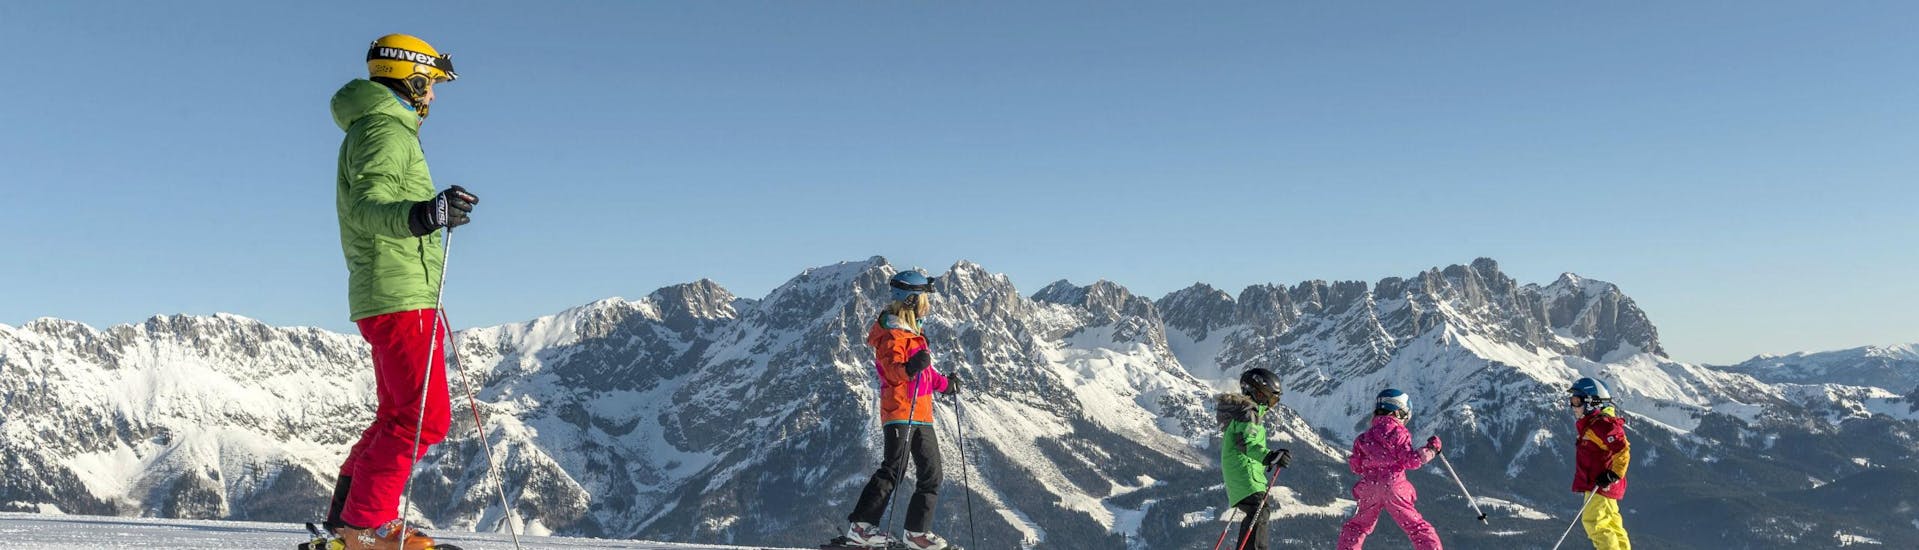 Ausblick auf die sonnige Berglandschaft beim Skifahren lernen mit einer Skischule im Skigebiet Söll.